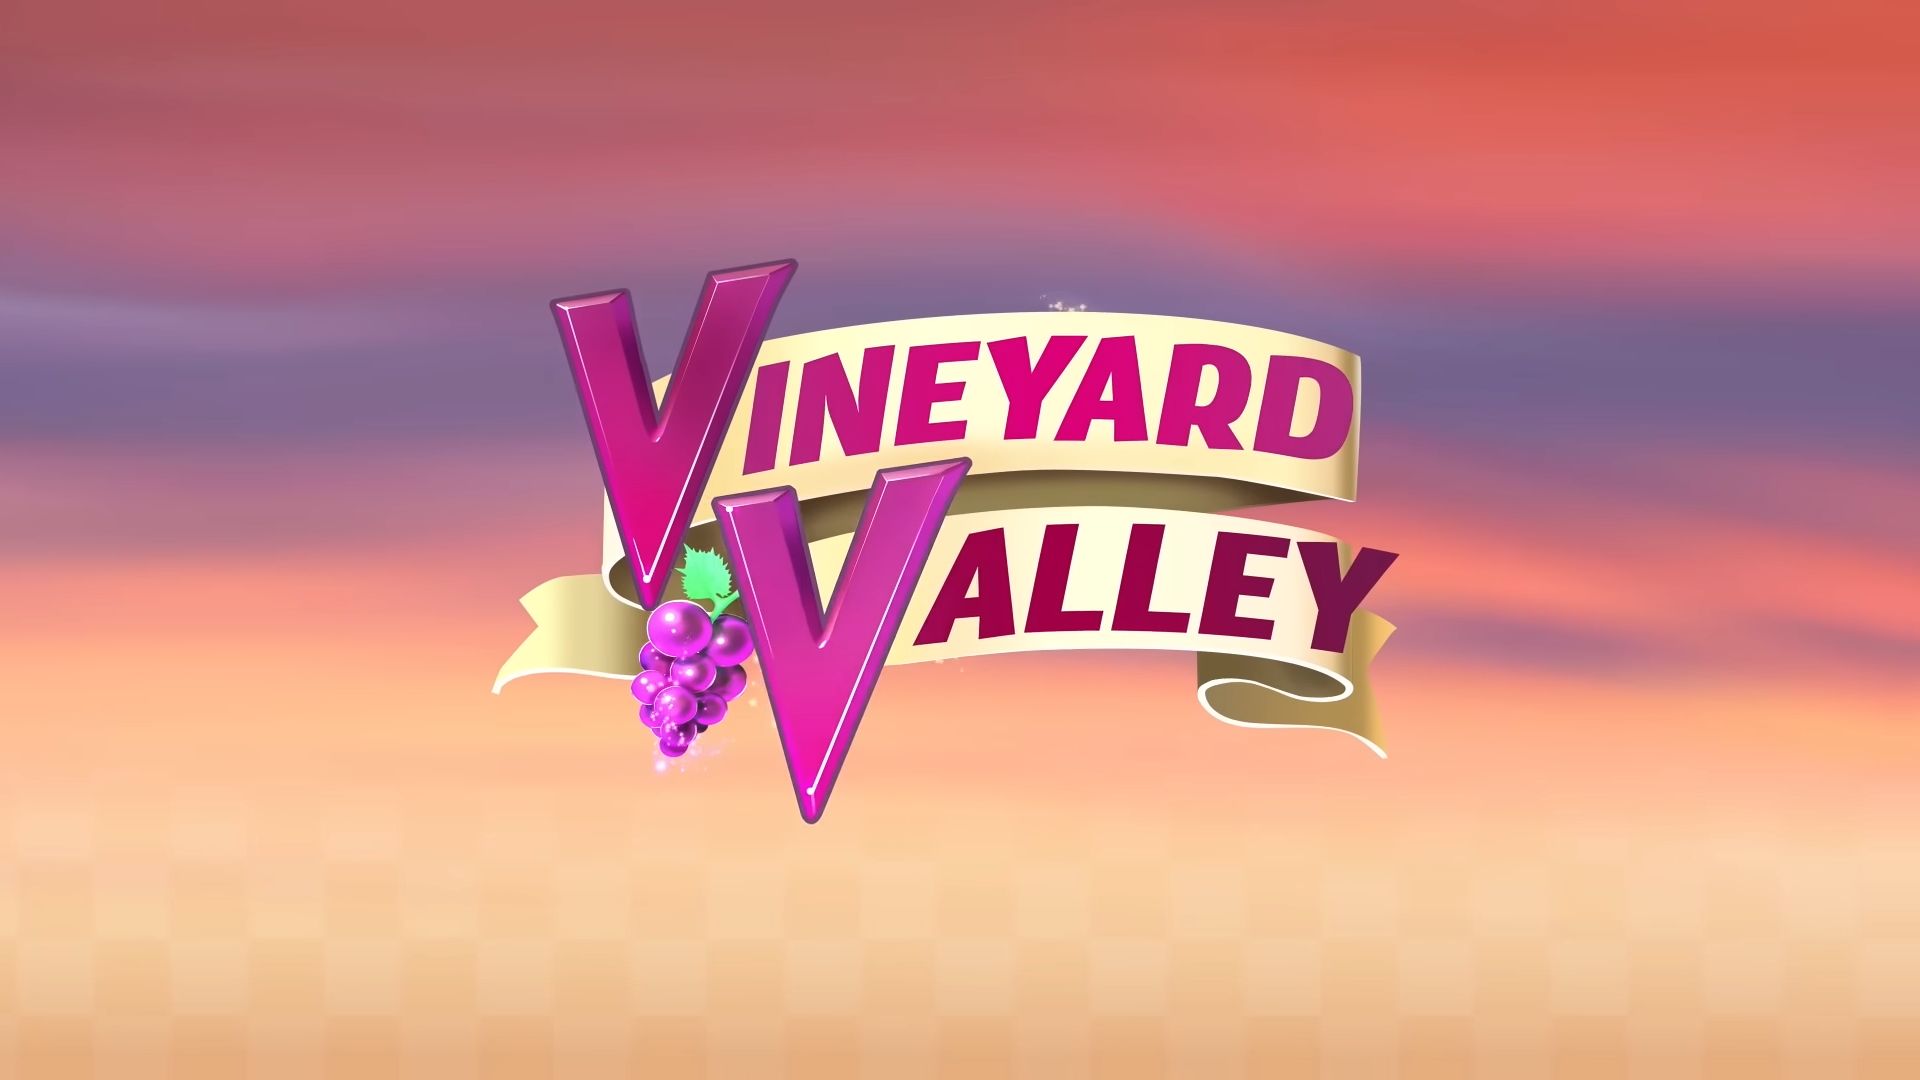 Télécharger Vineyard Valley NETFLIX pour Android gratuit.